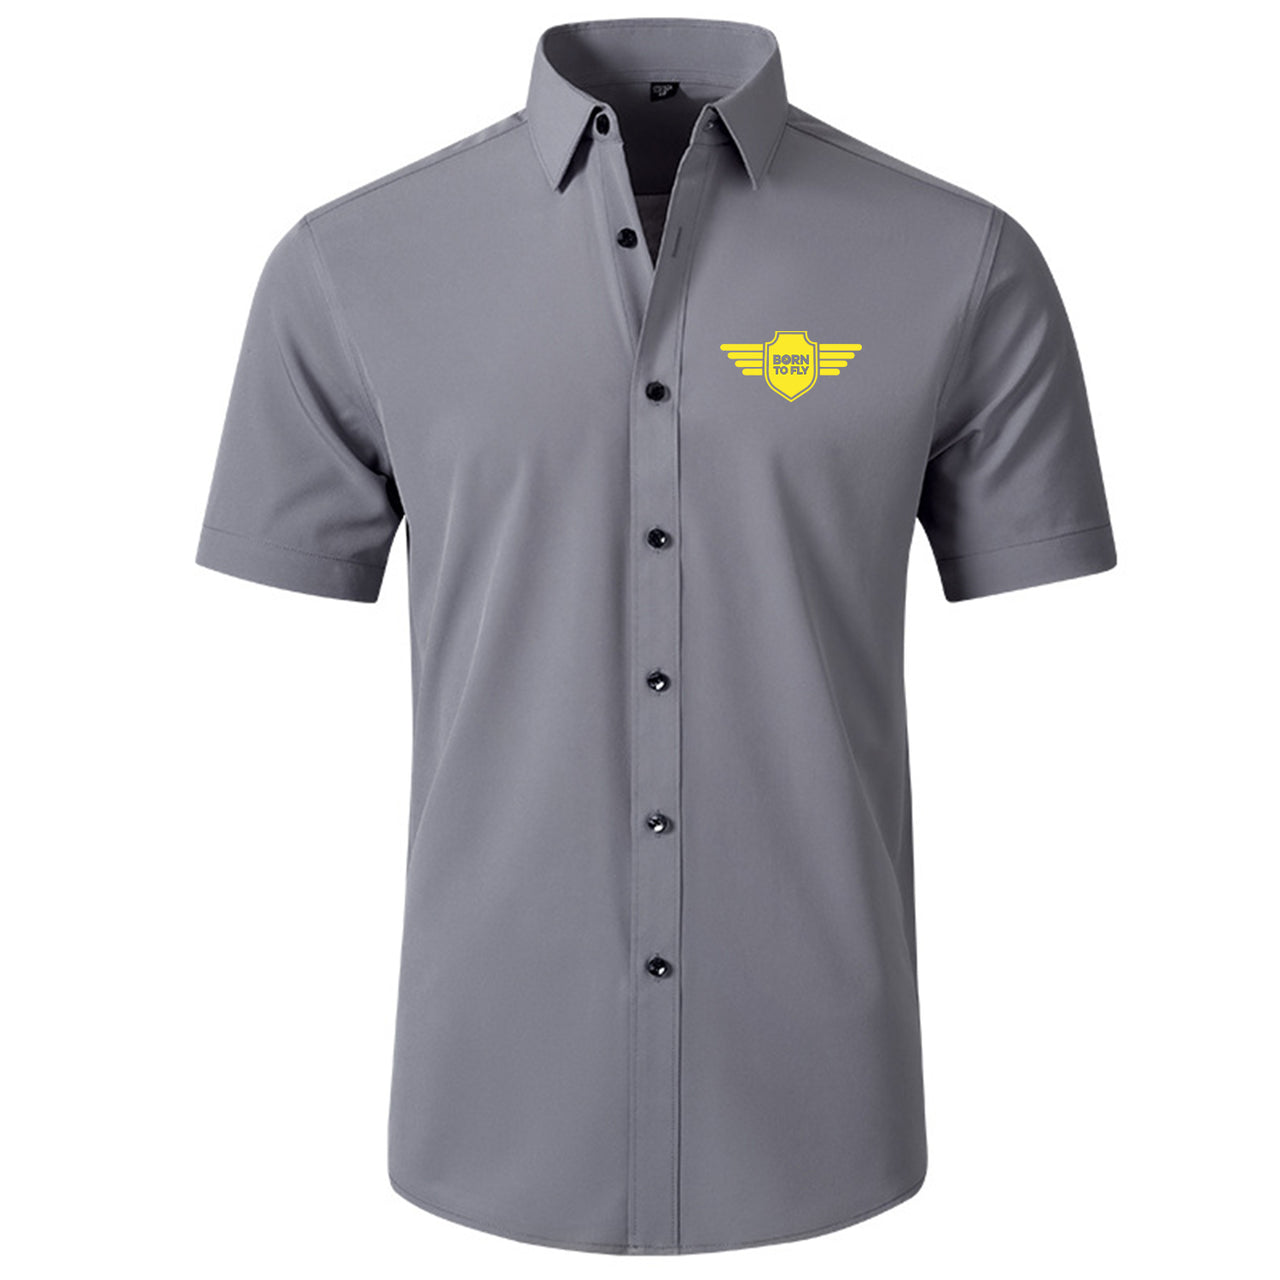 Born To Fly & Badge Designed Short Sleeve Shirts